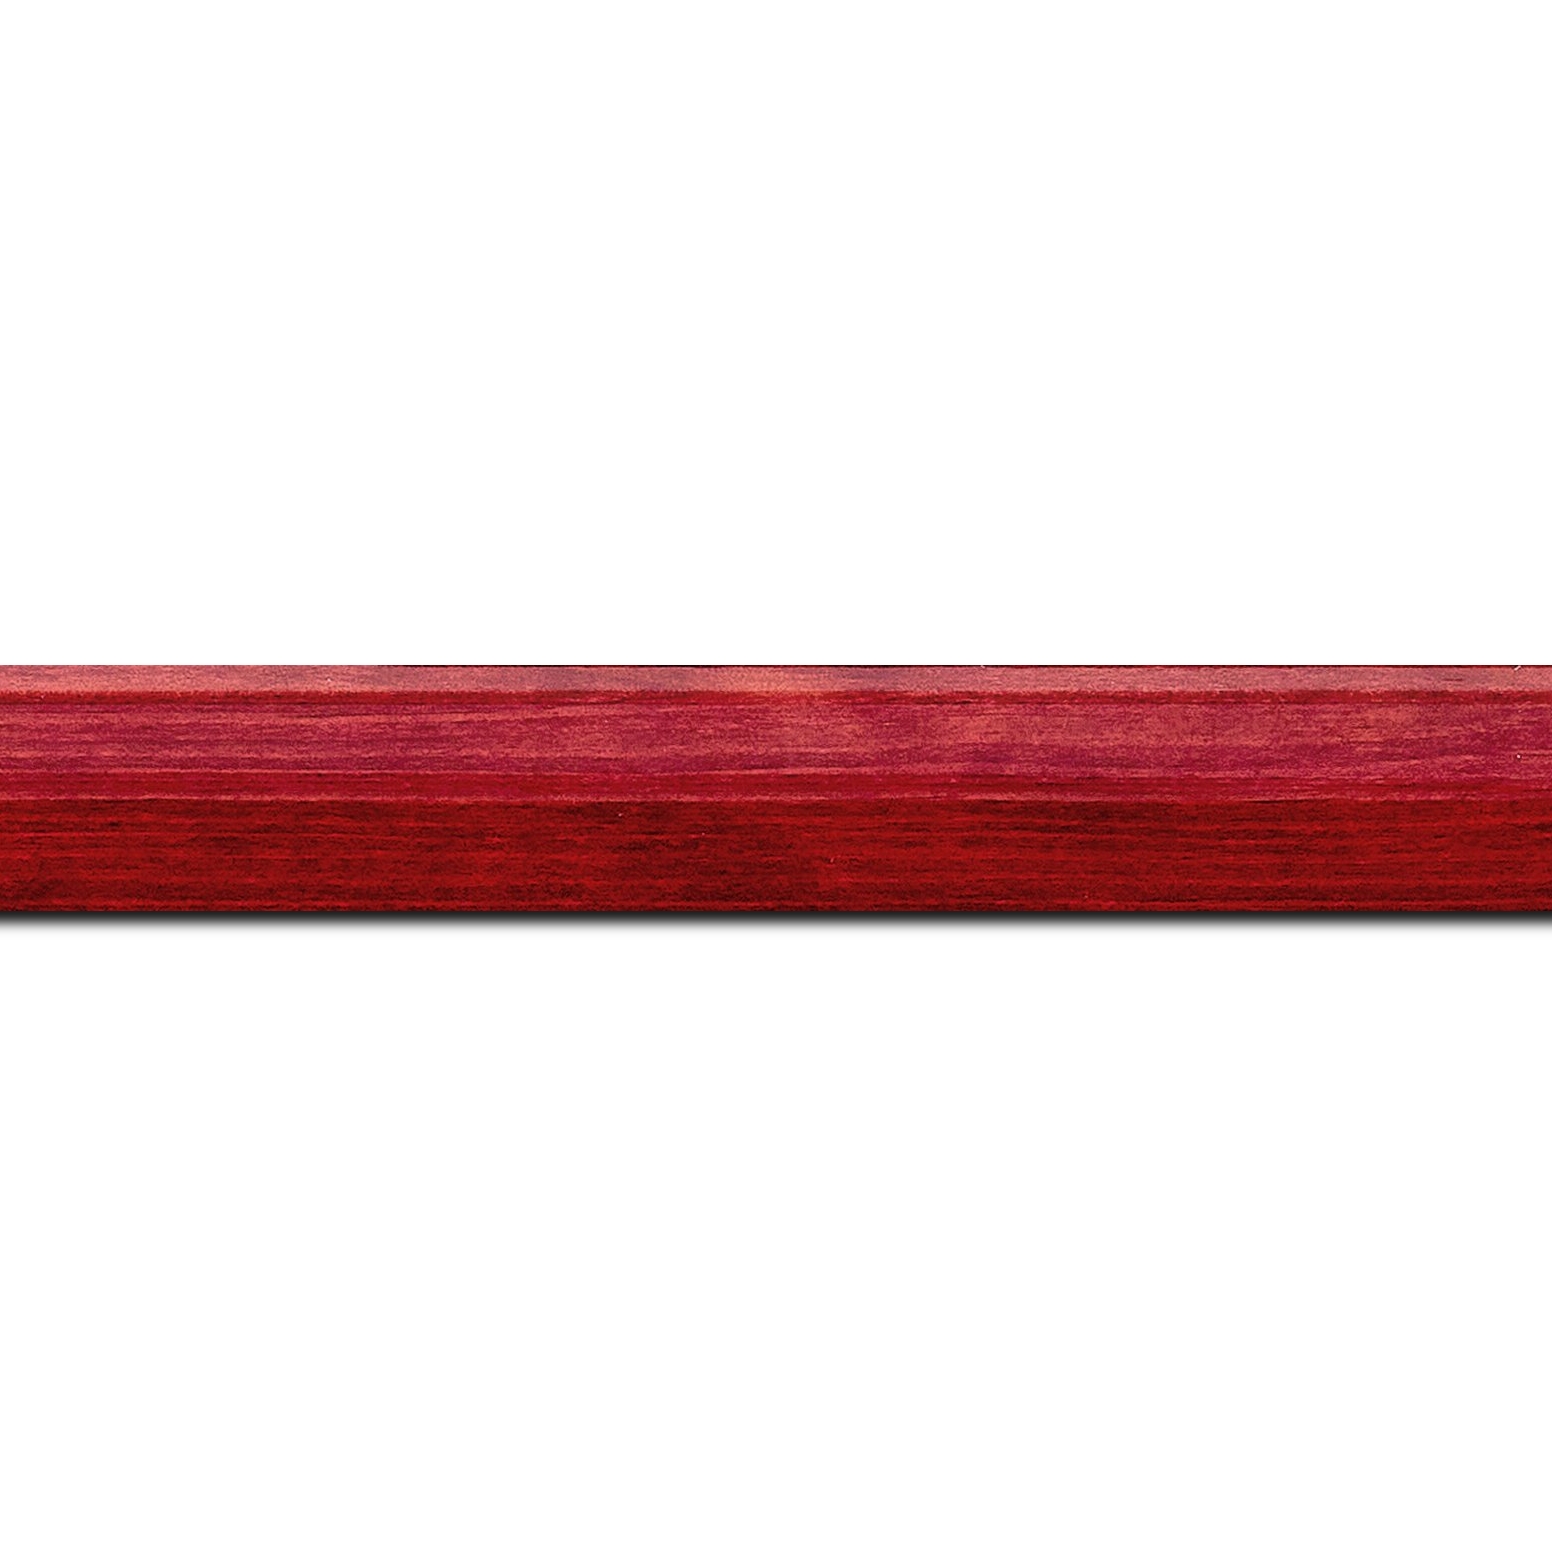 Baguette longueur 1.40m bois profil arrondi en pente plongeant largeur 2.4cm couleur rouge cerise finition vernis brillant,veine du bois  apparent (pin) ,